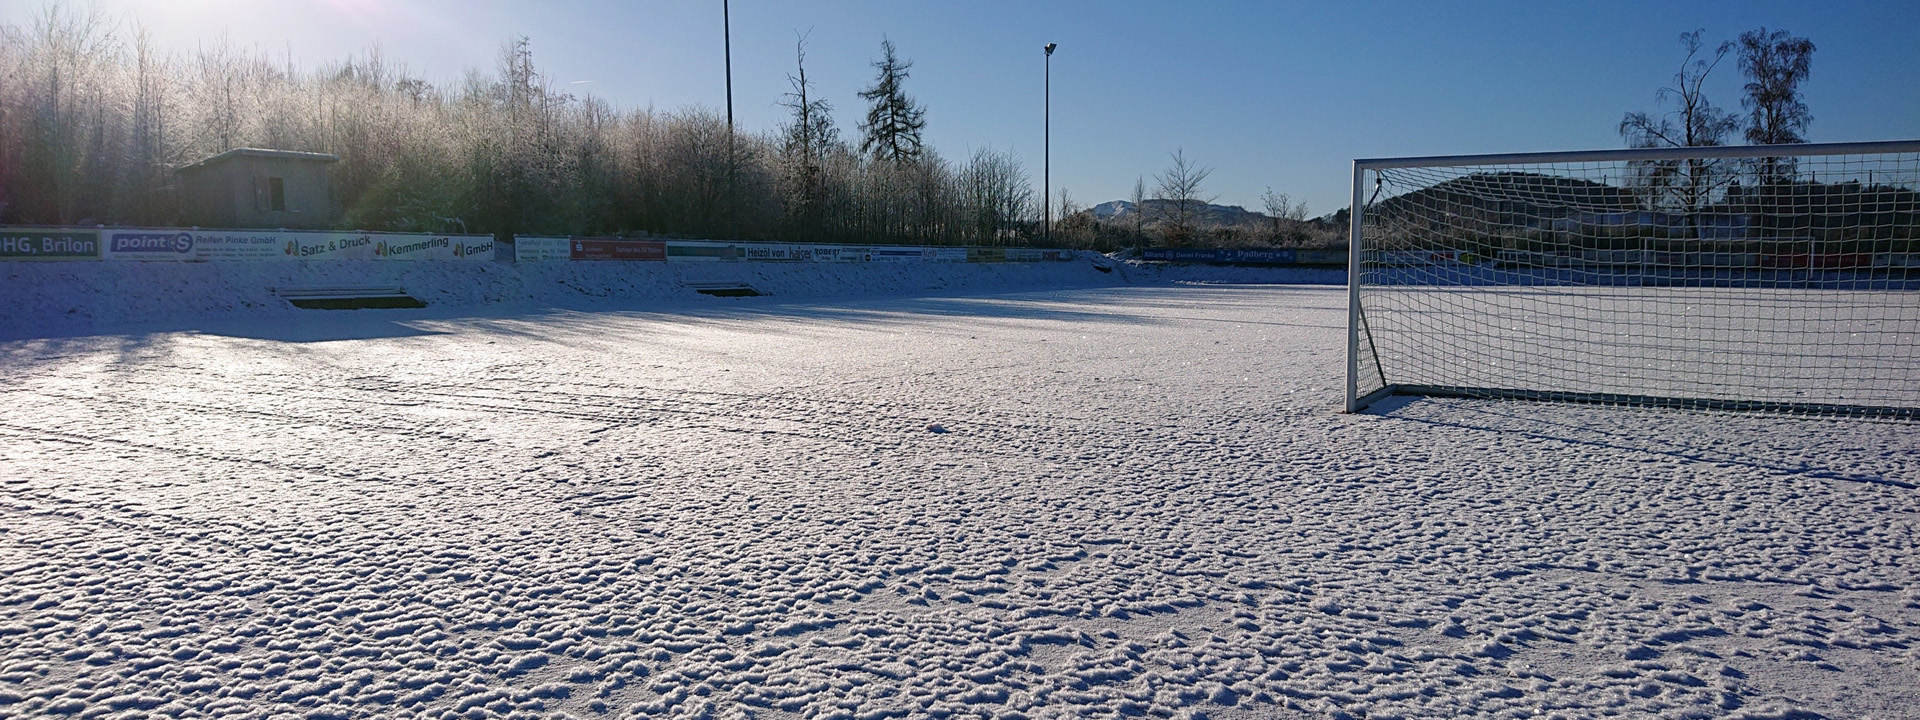 Sportrasenfeld im Winter mit Schneedecke